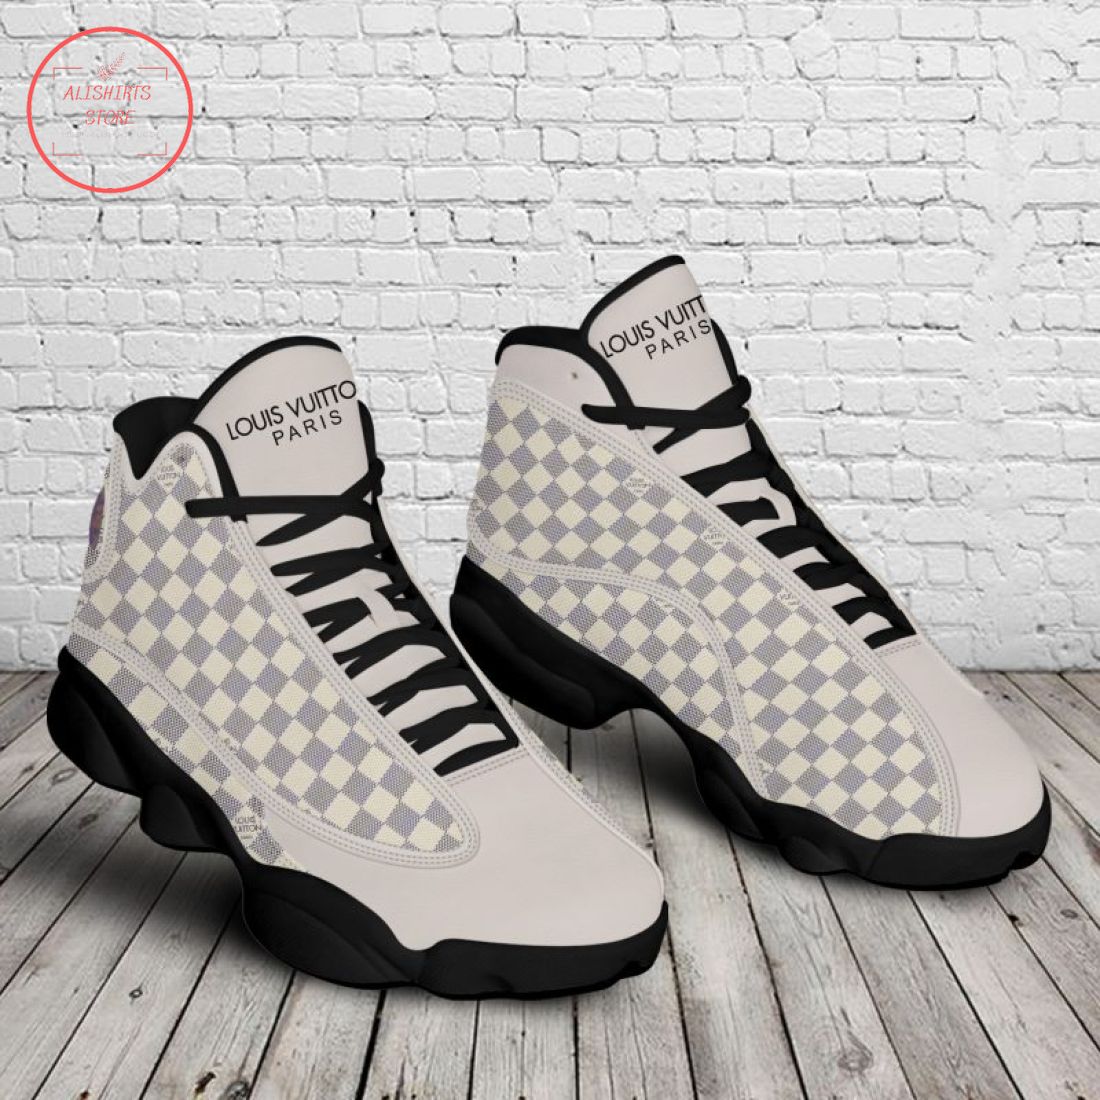 Louis Vuitton Paris checkerboard Air Jordan 13 Sneakers